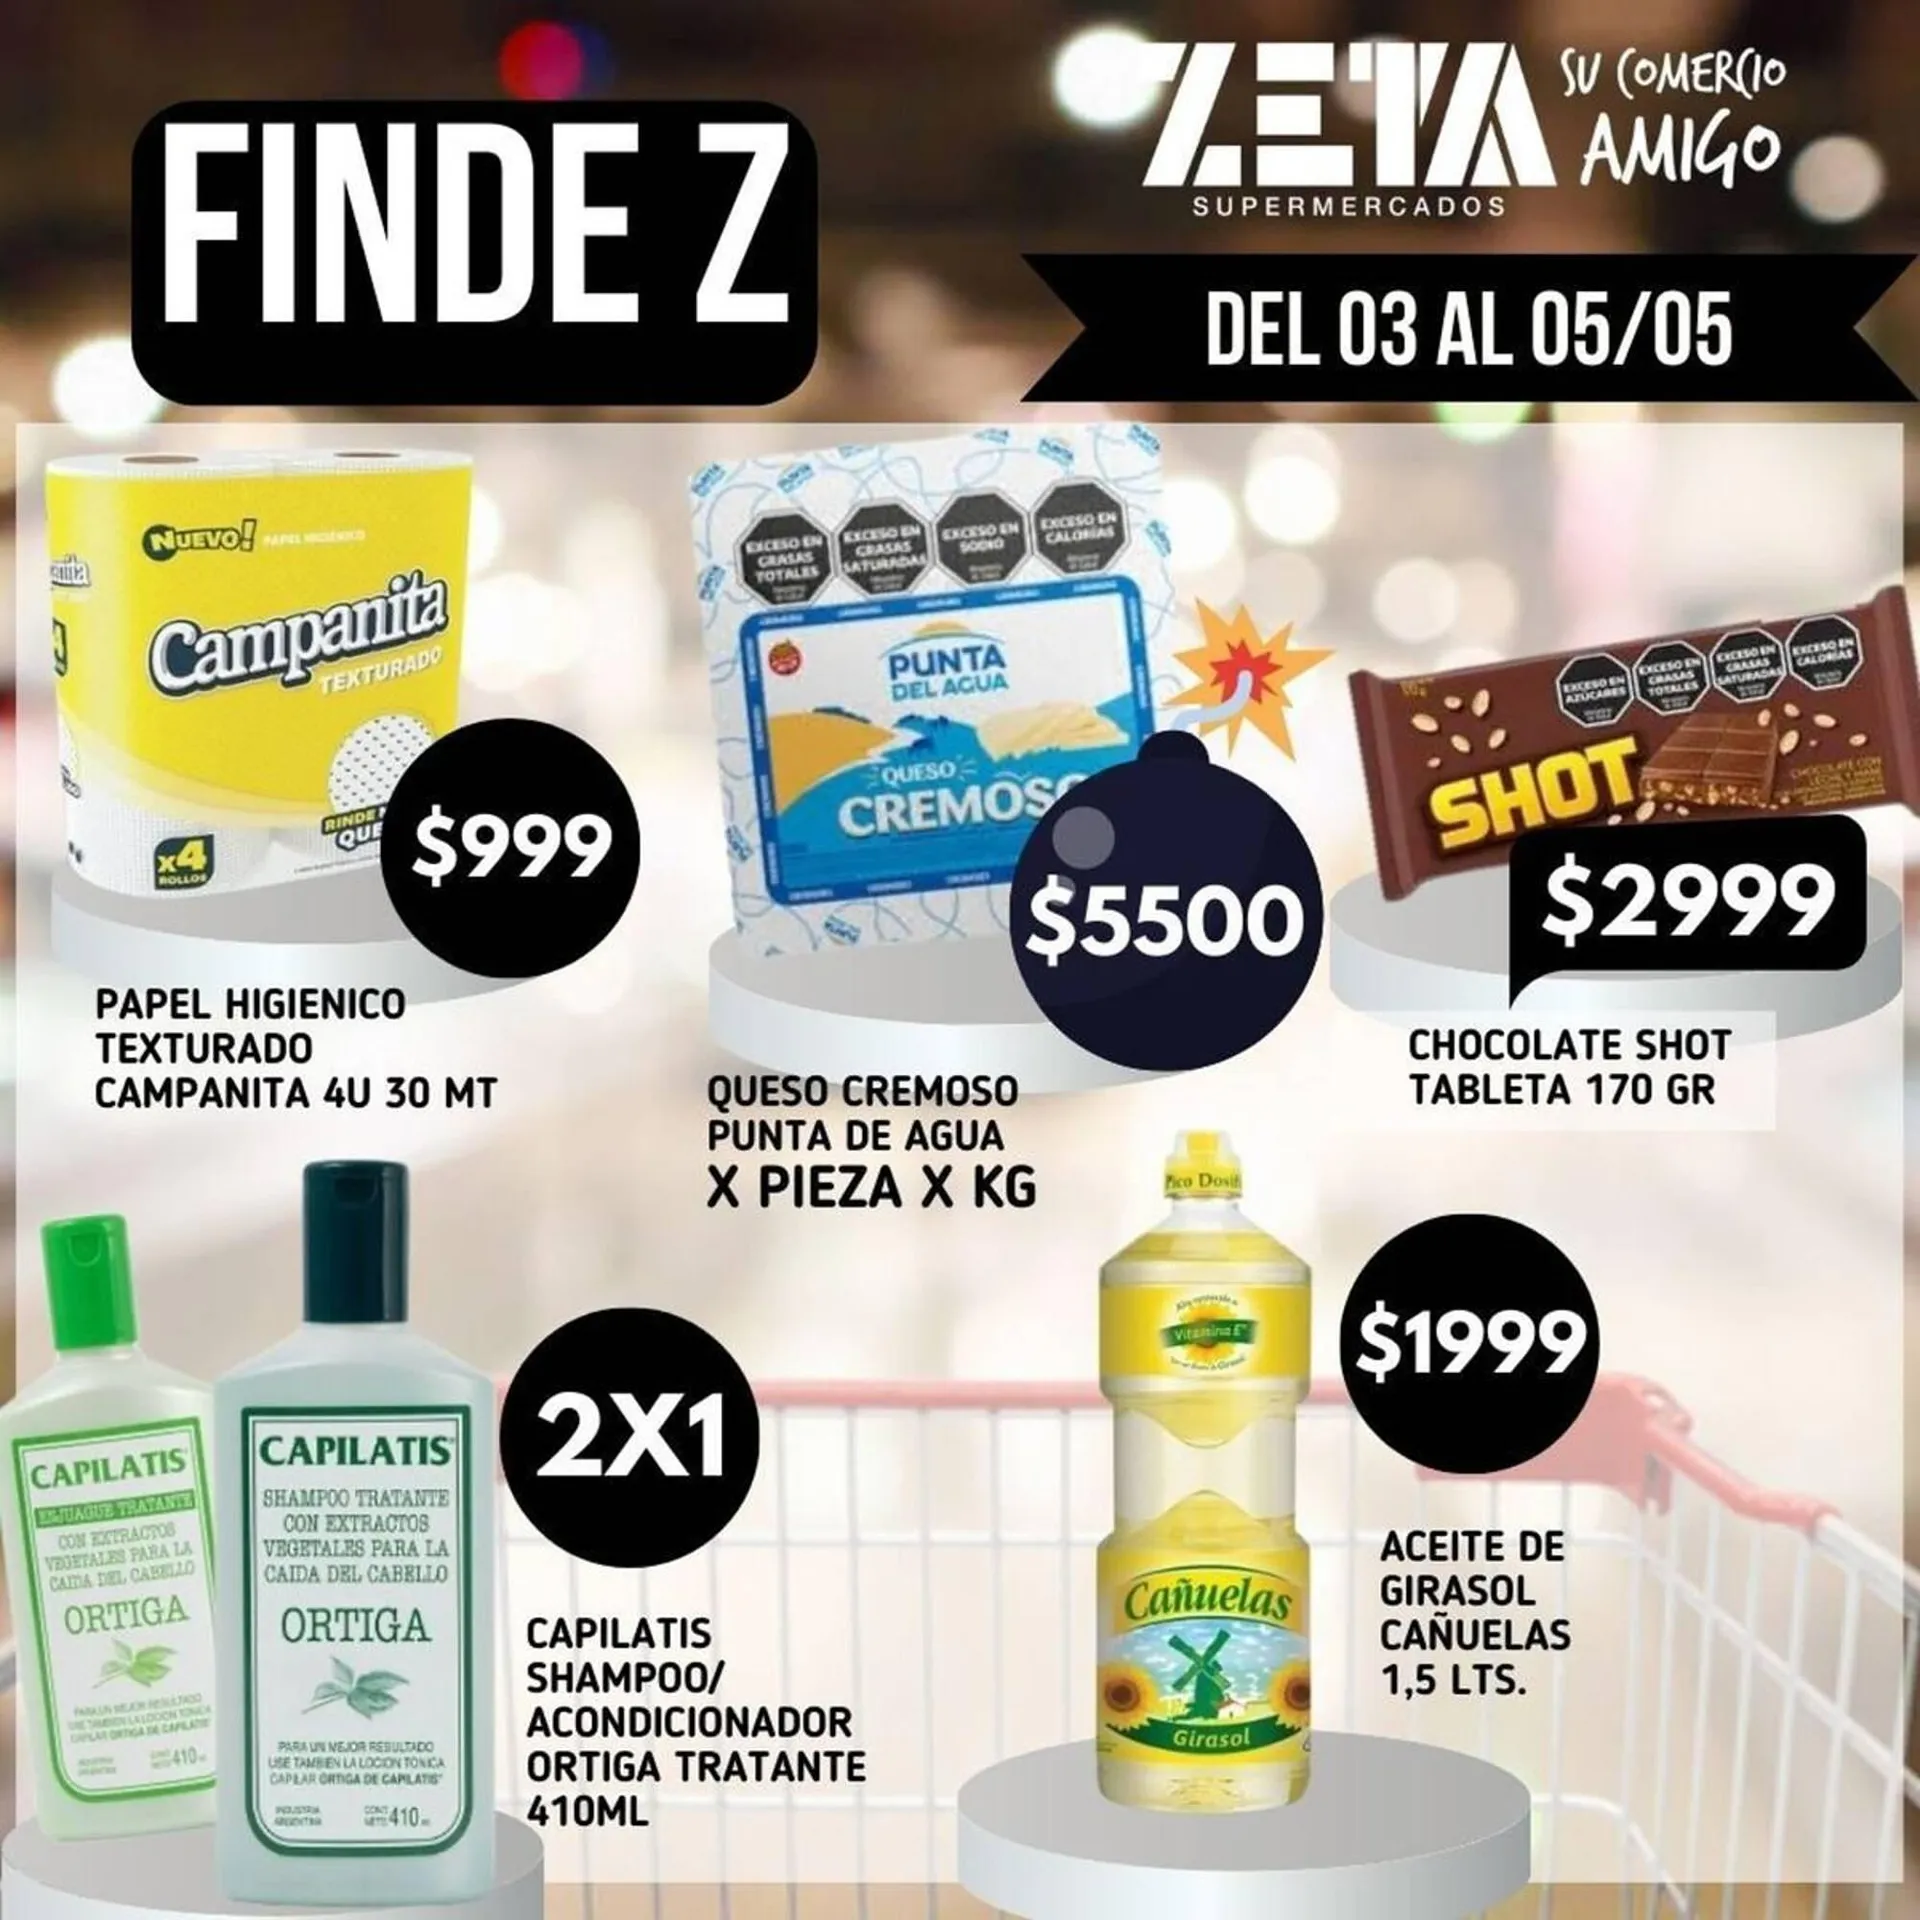 Catálogo Supermercados Zeta - 1